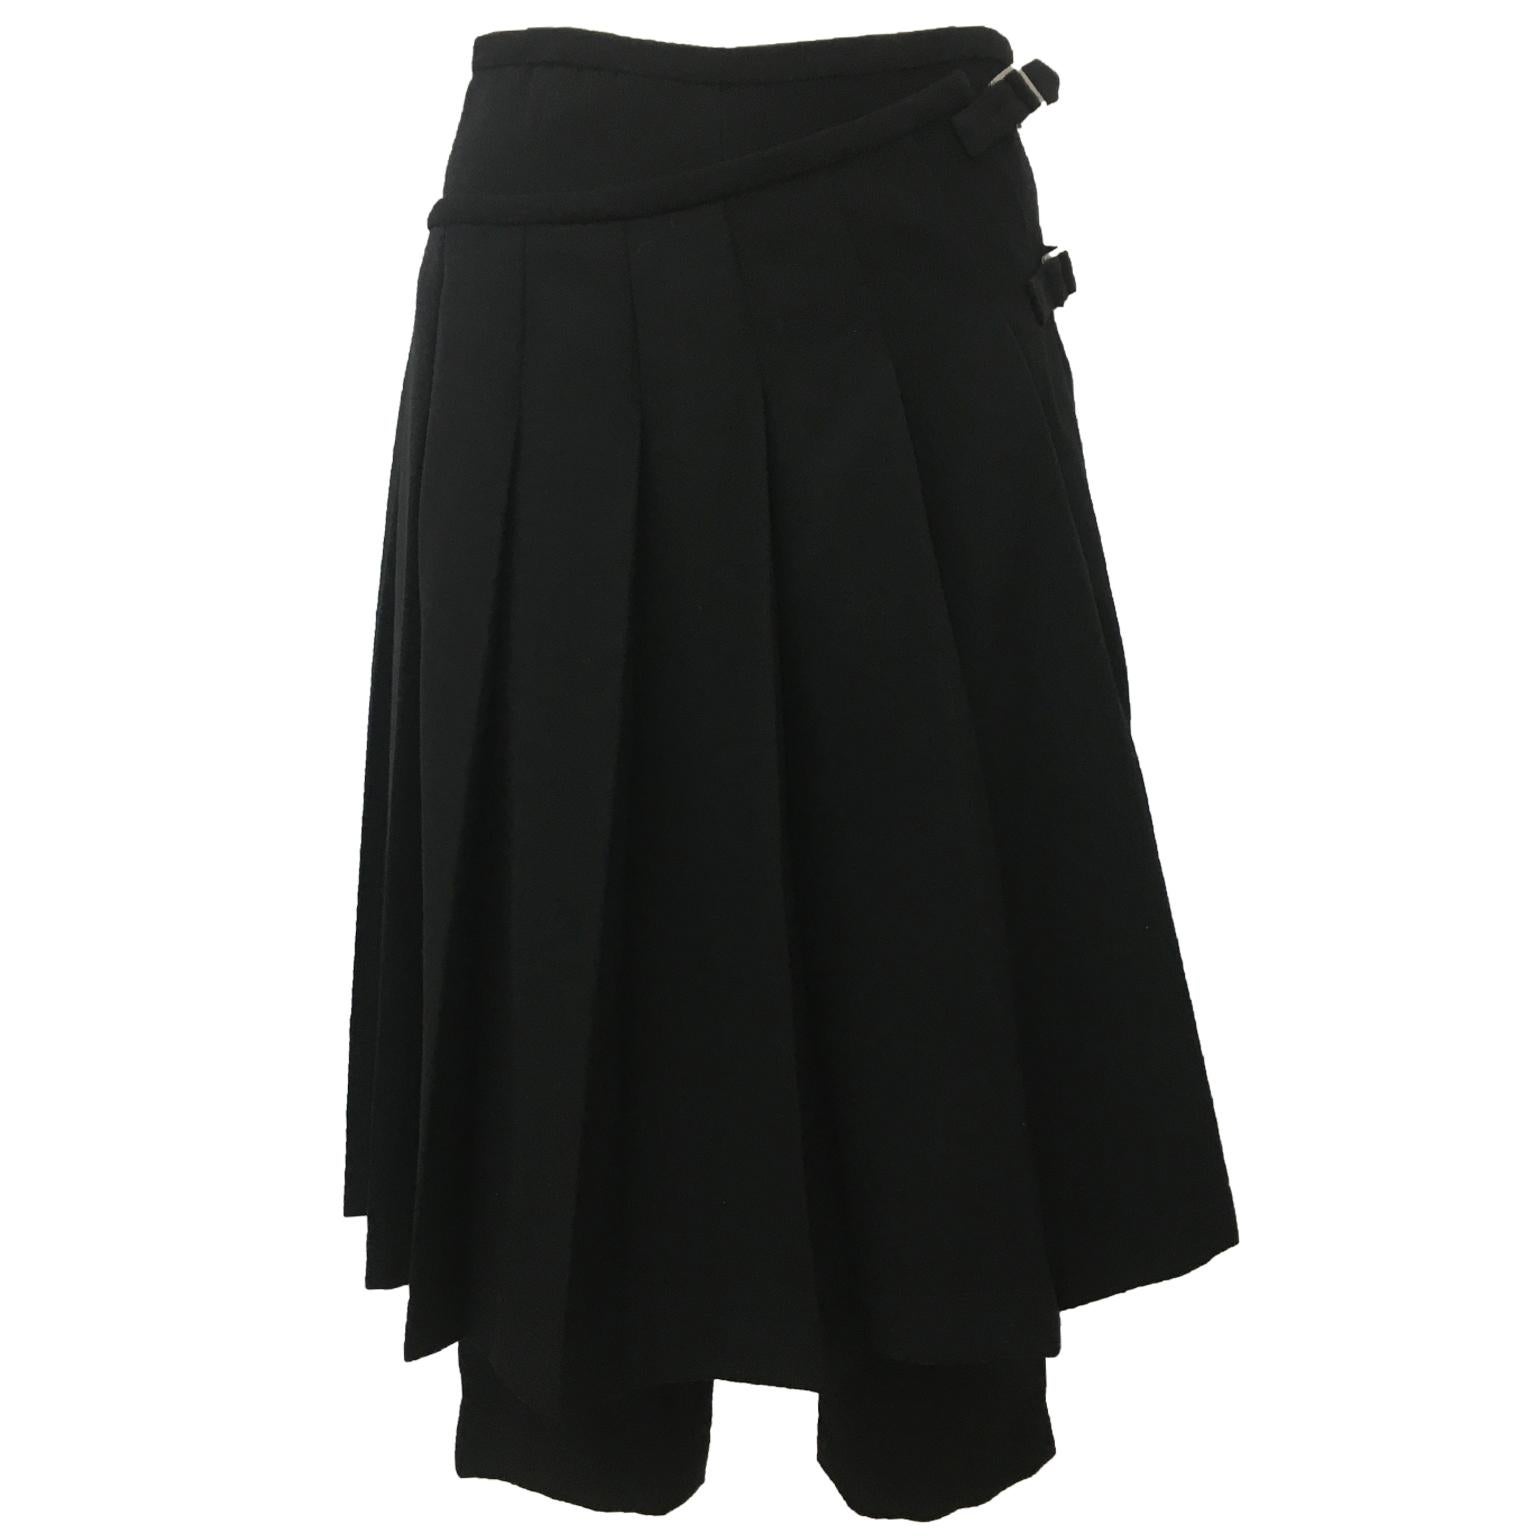 Comme des Garcons robe de chambre line trouser with adjustable strap wrap skirt AD 1998.
Measurements : 
Waist : circa 70 cm
Side length trouser : 76 cm